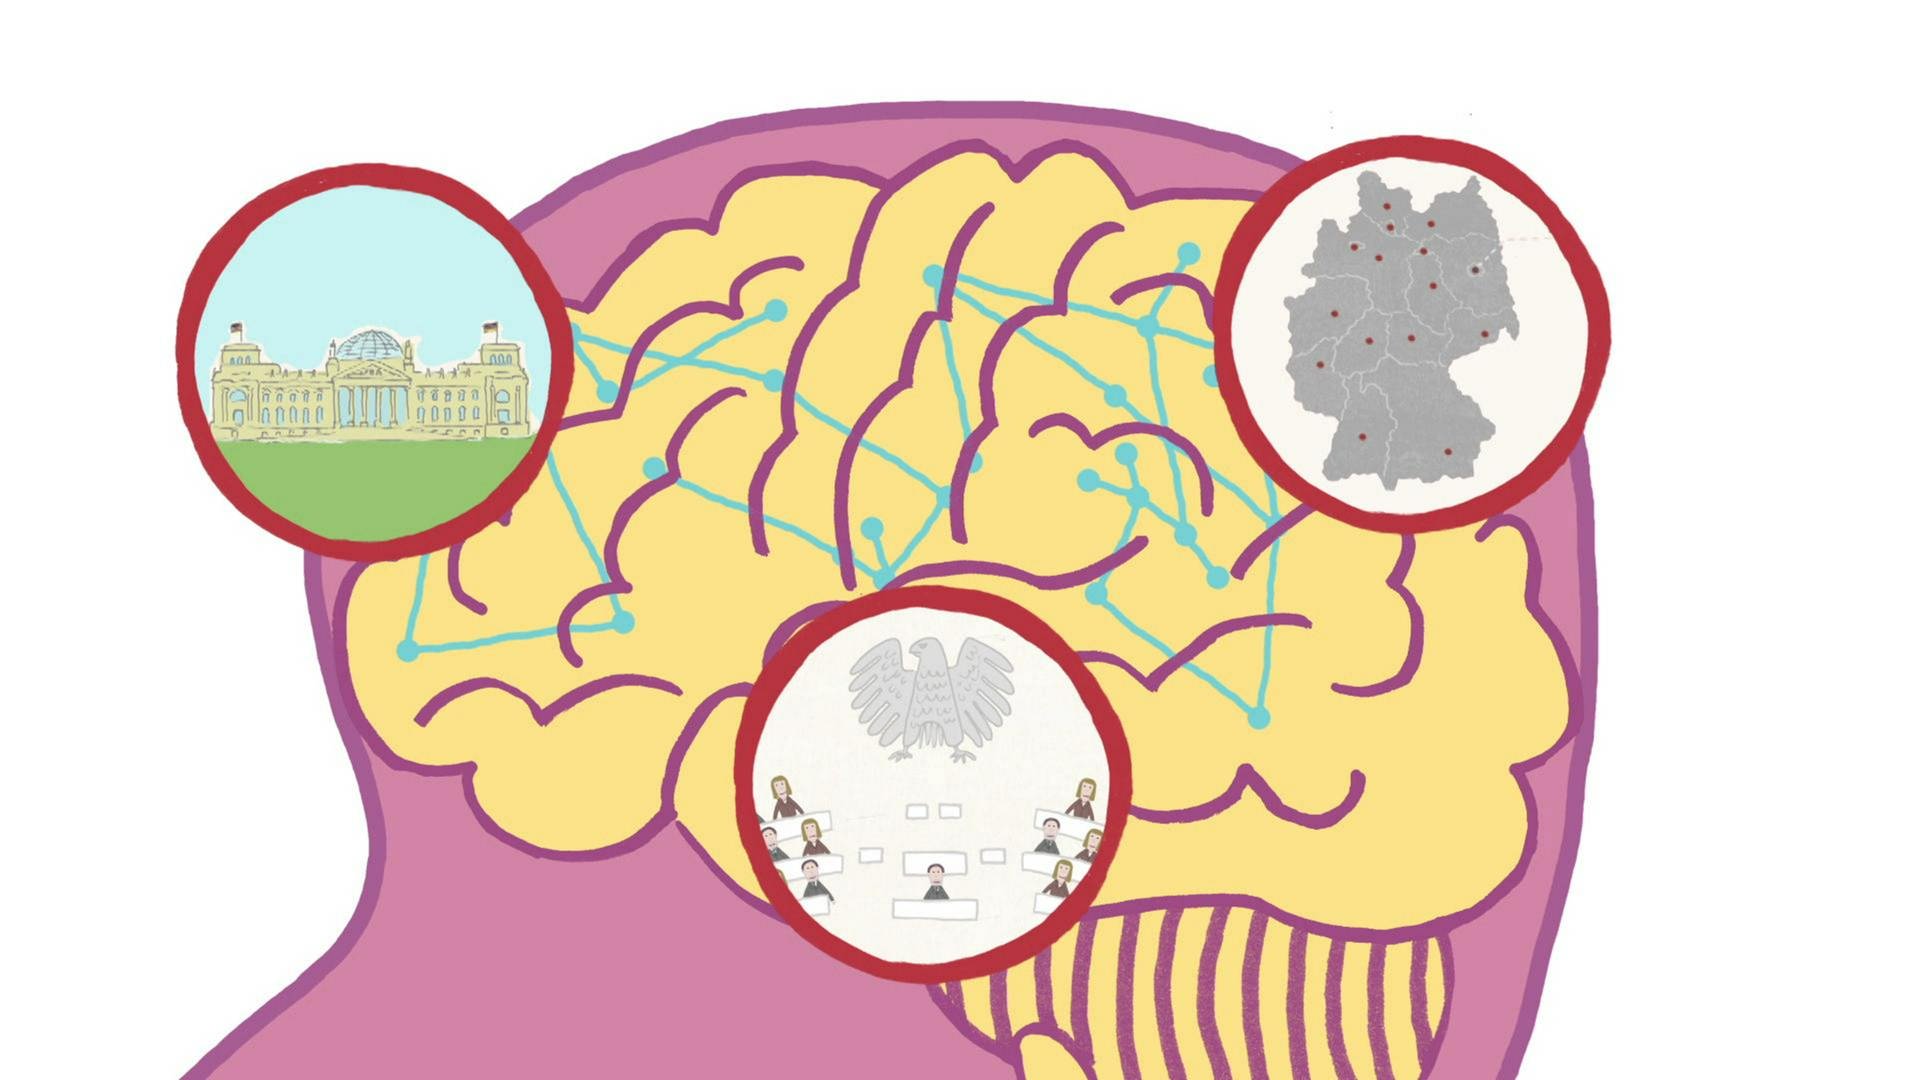 Grafik eines Gehirns mit kleinen Symbolen für das Gedächtnis.